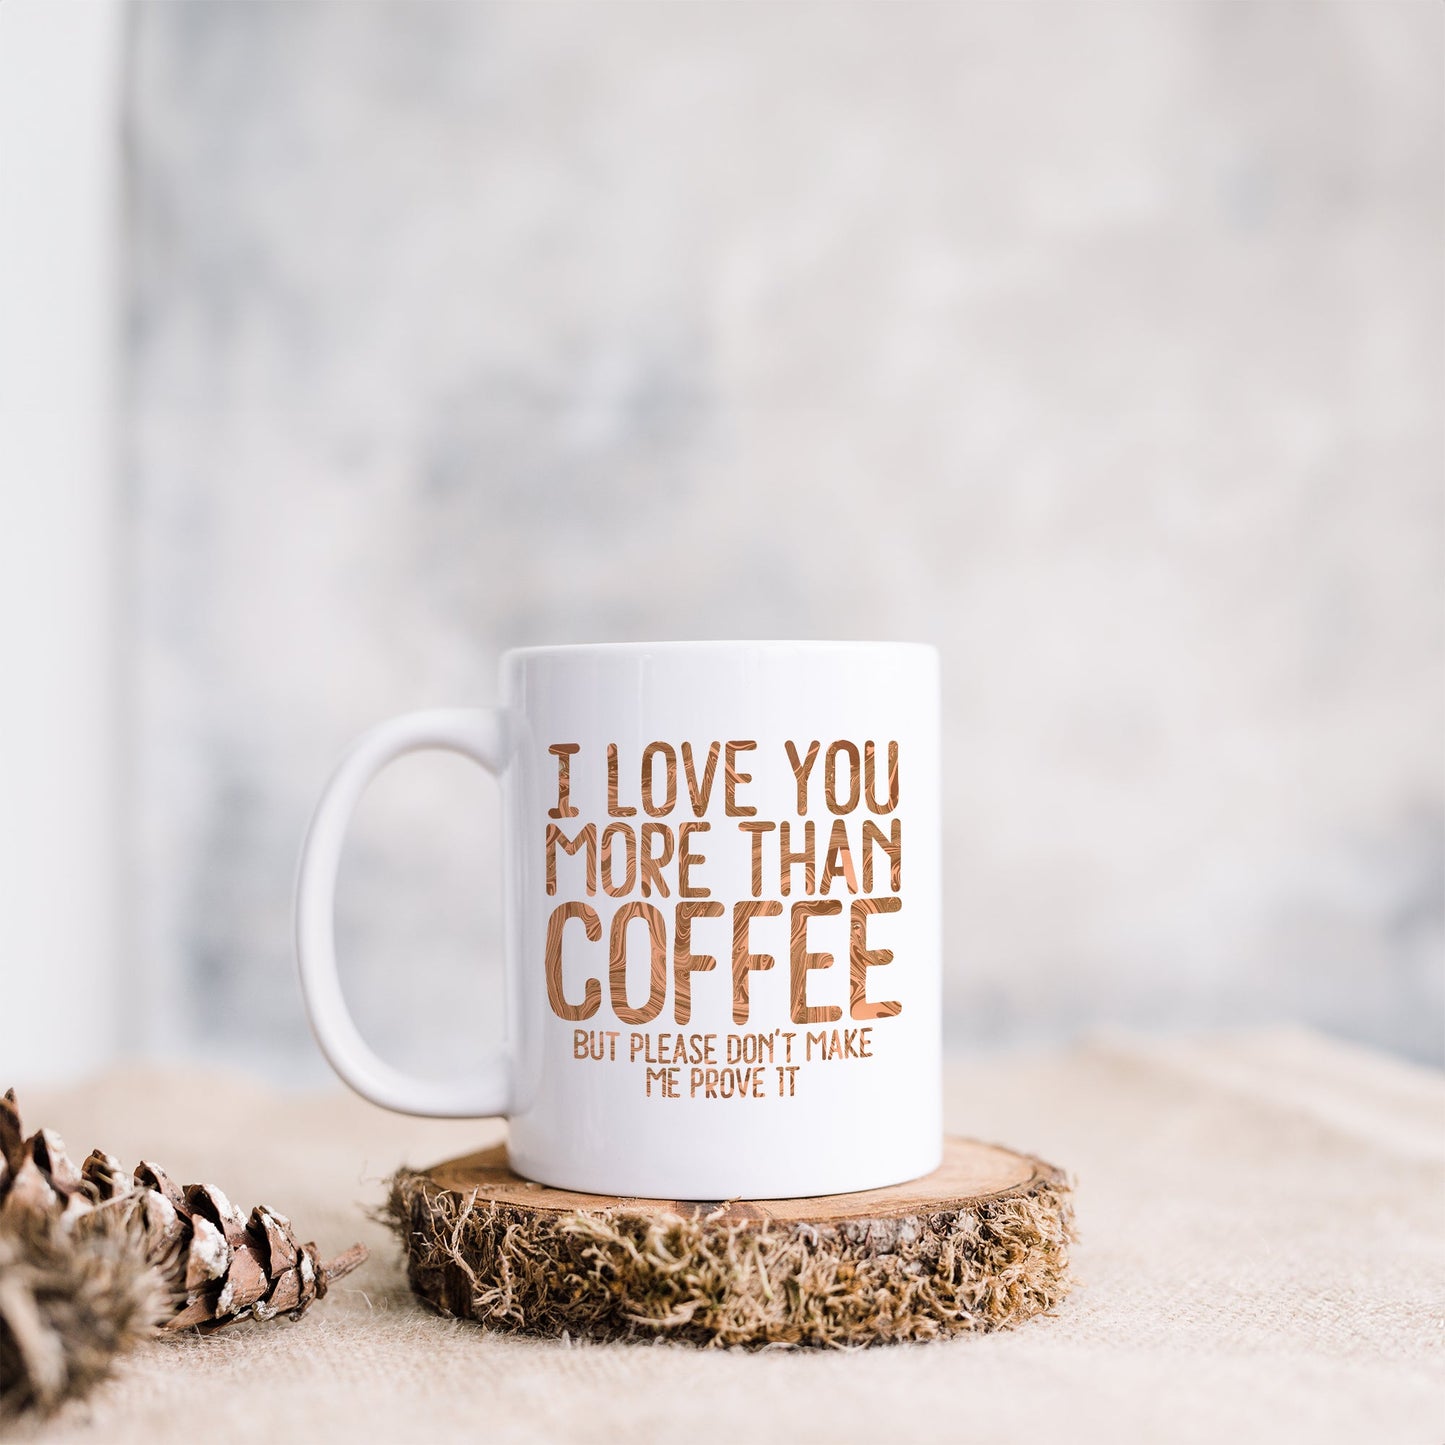 I love you more than coffee | Ceramic mug-Ceramic mug-Adnil Creations